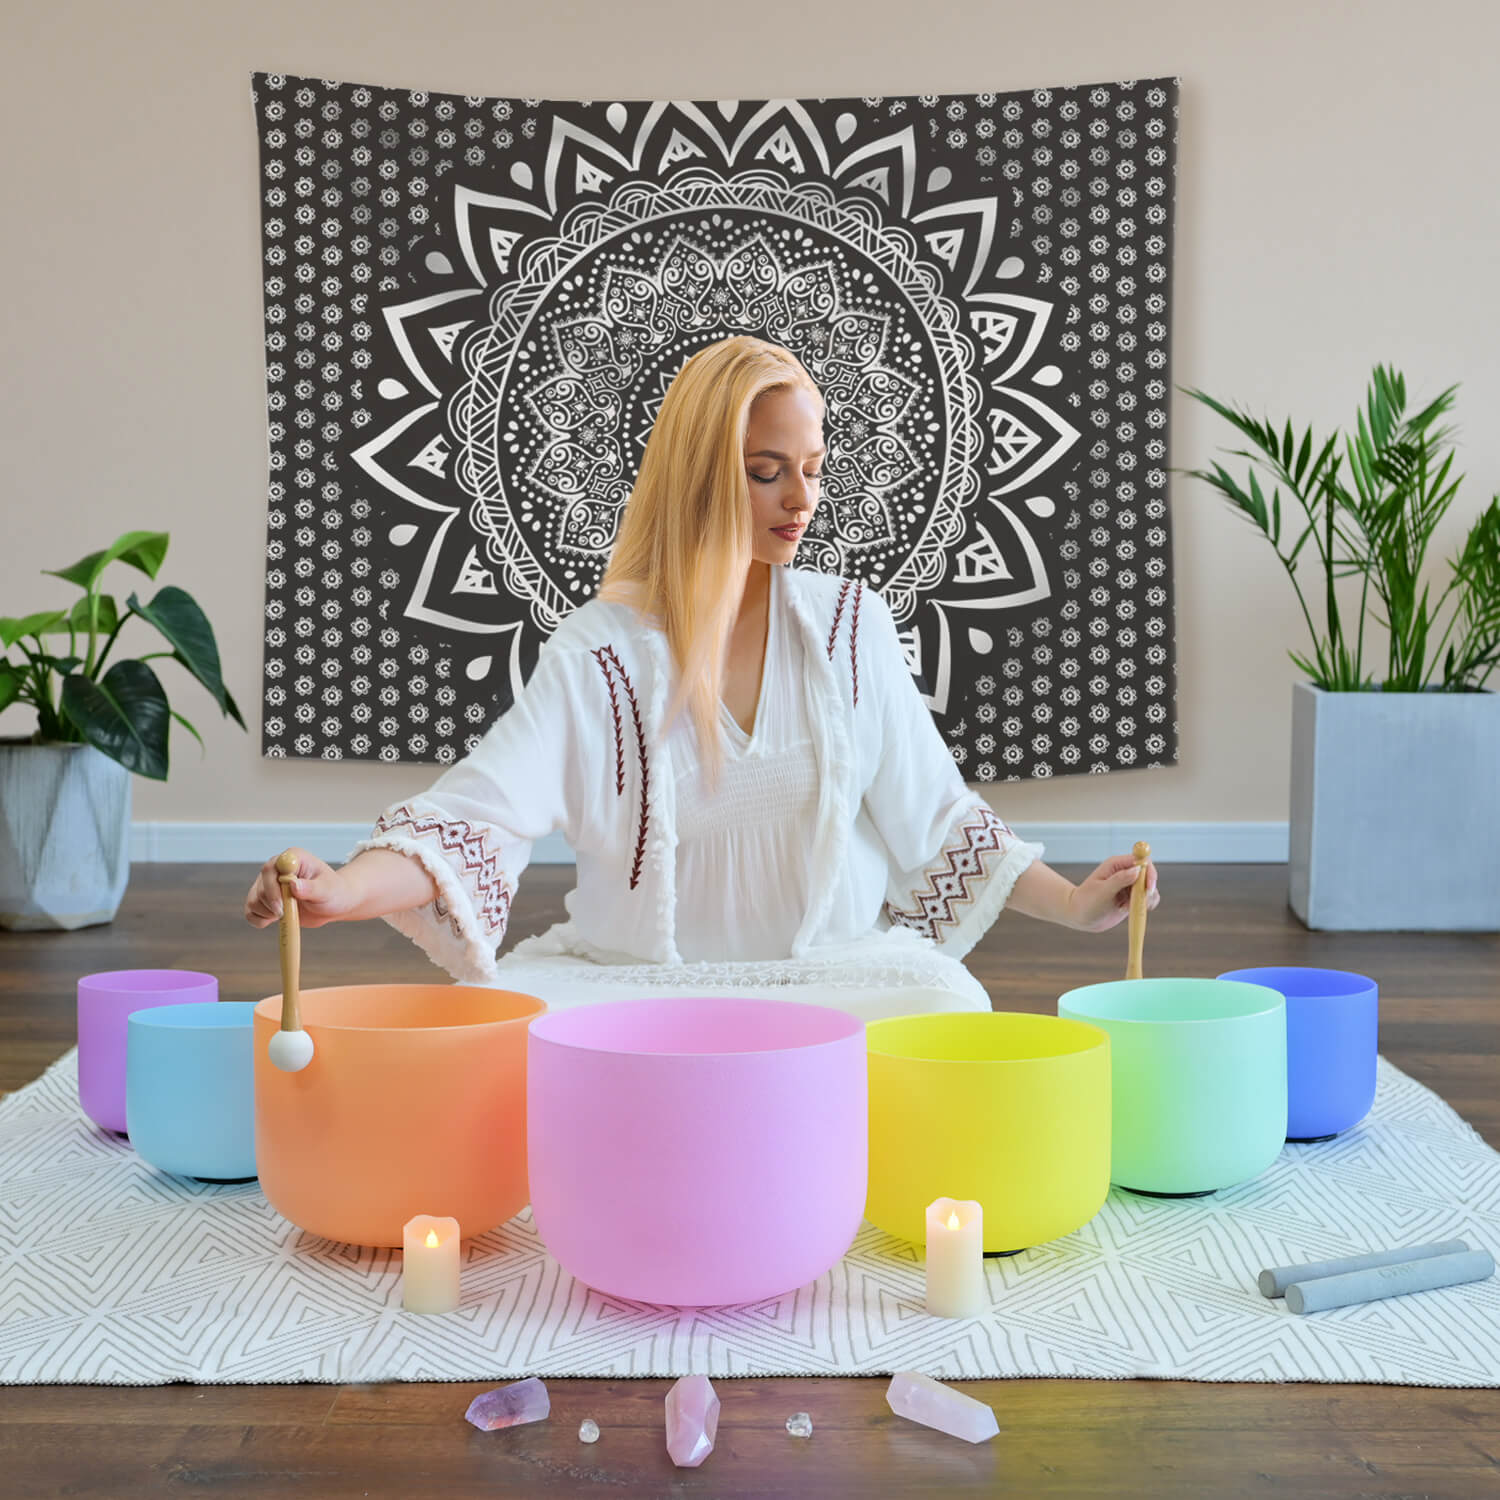 Pastel Crystal Singing Bowl Set for Meditation 6-12 Inch